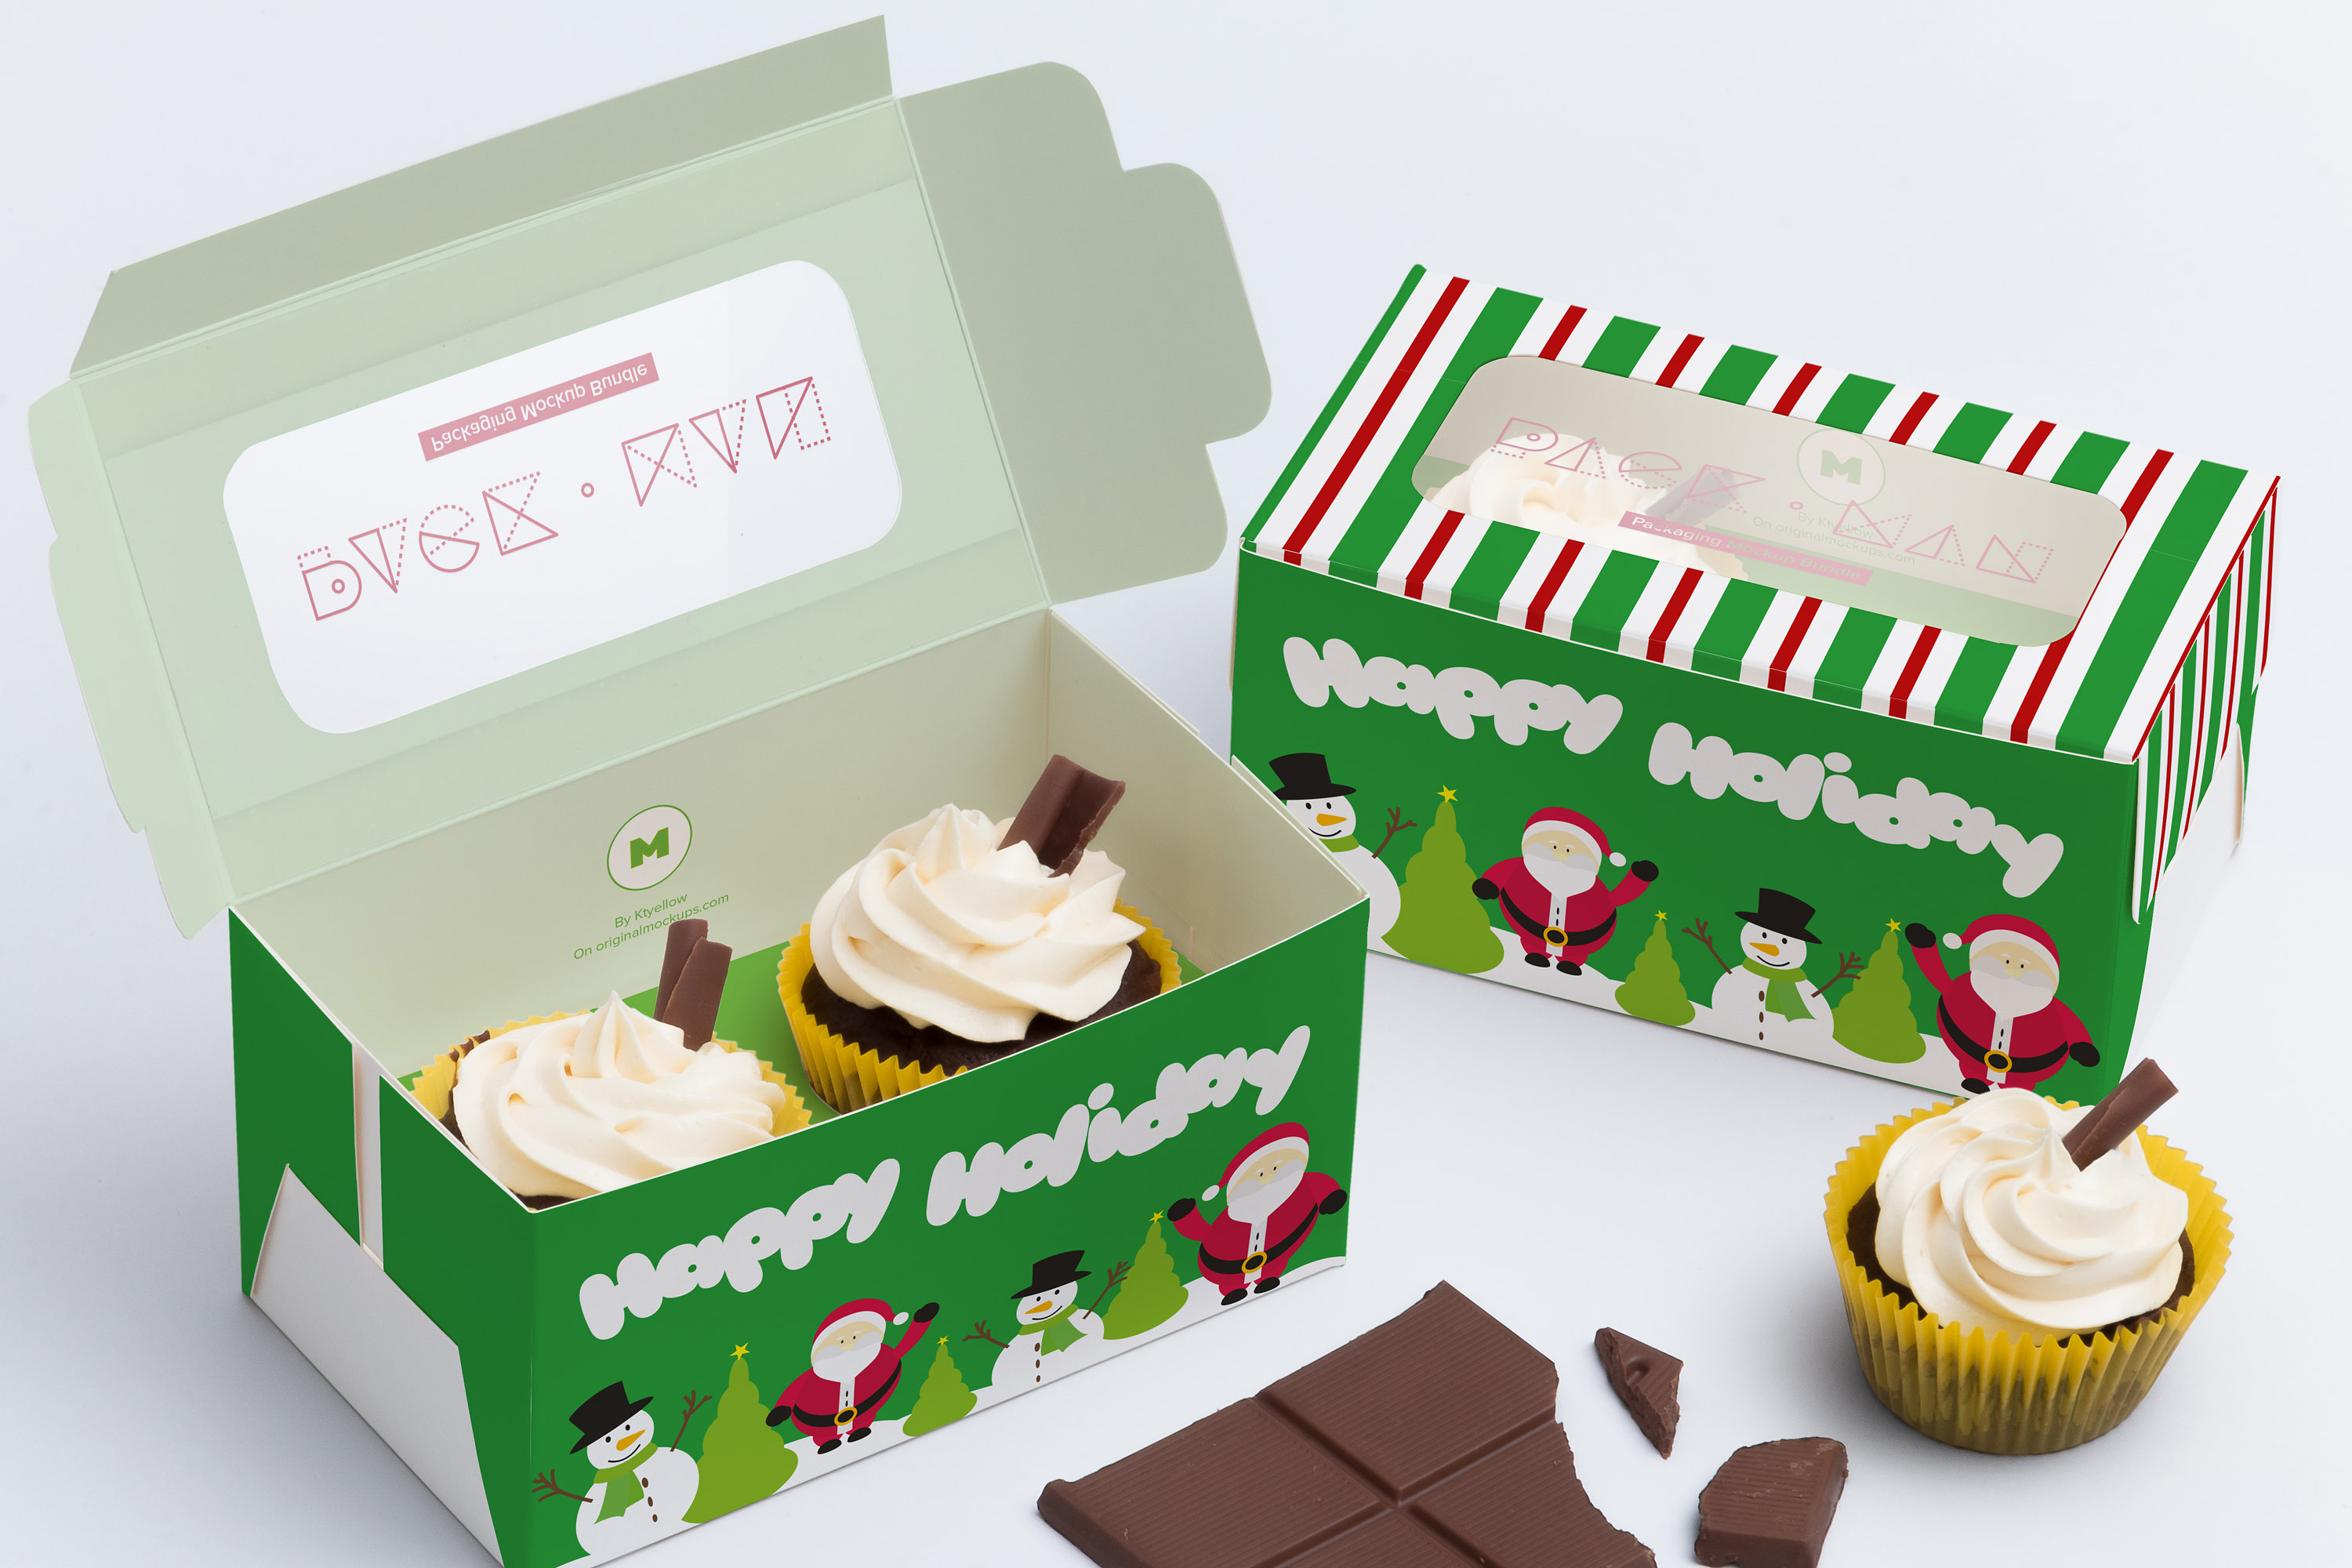 两只装纸杯蛋糕包装盒设计效果图样机01 Two Cupcake Box Mockup 01插图(1)